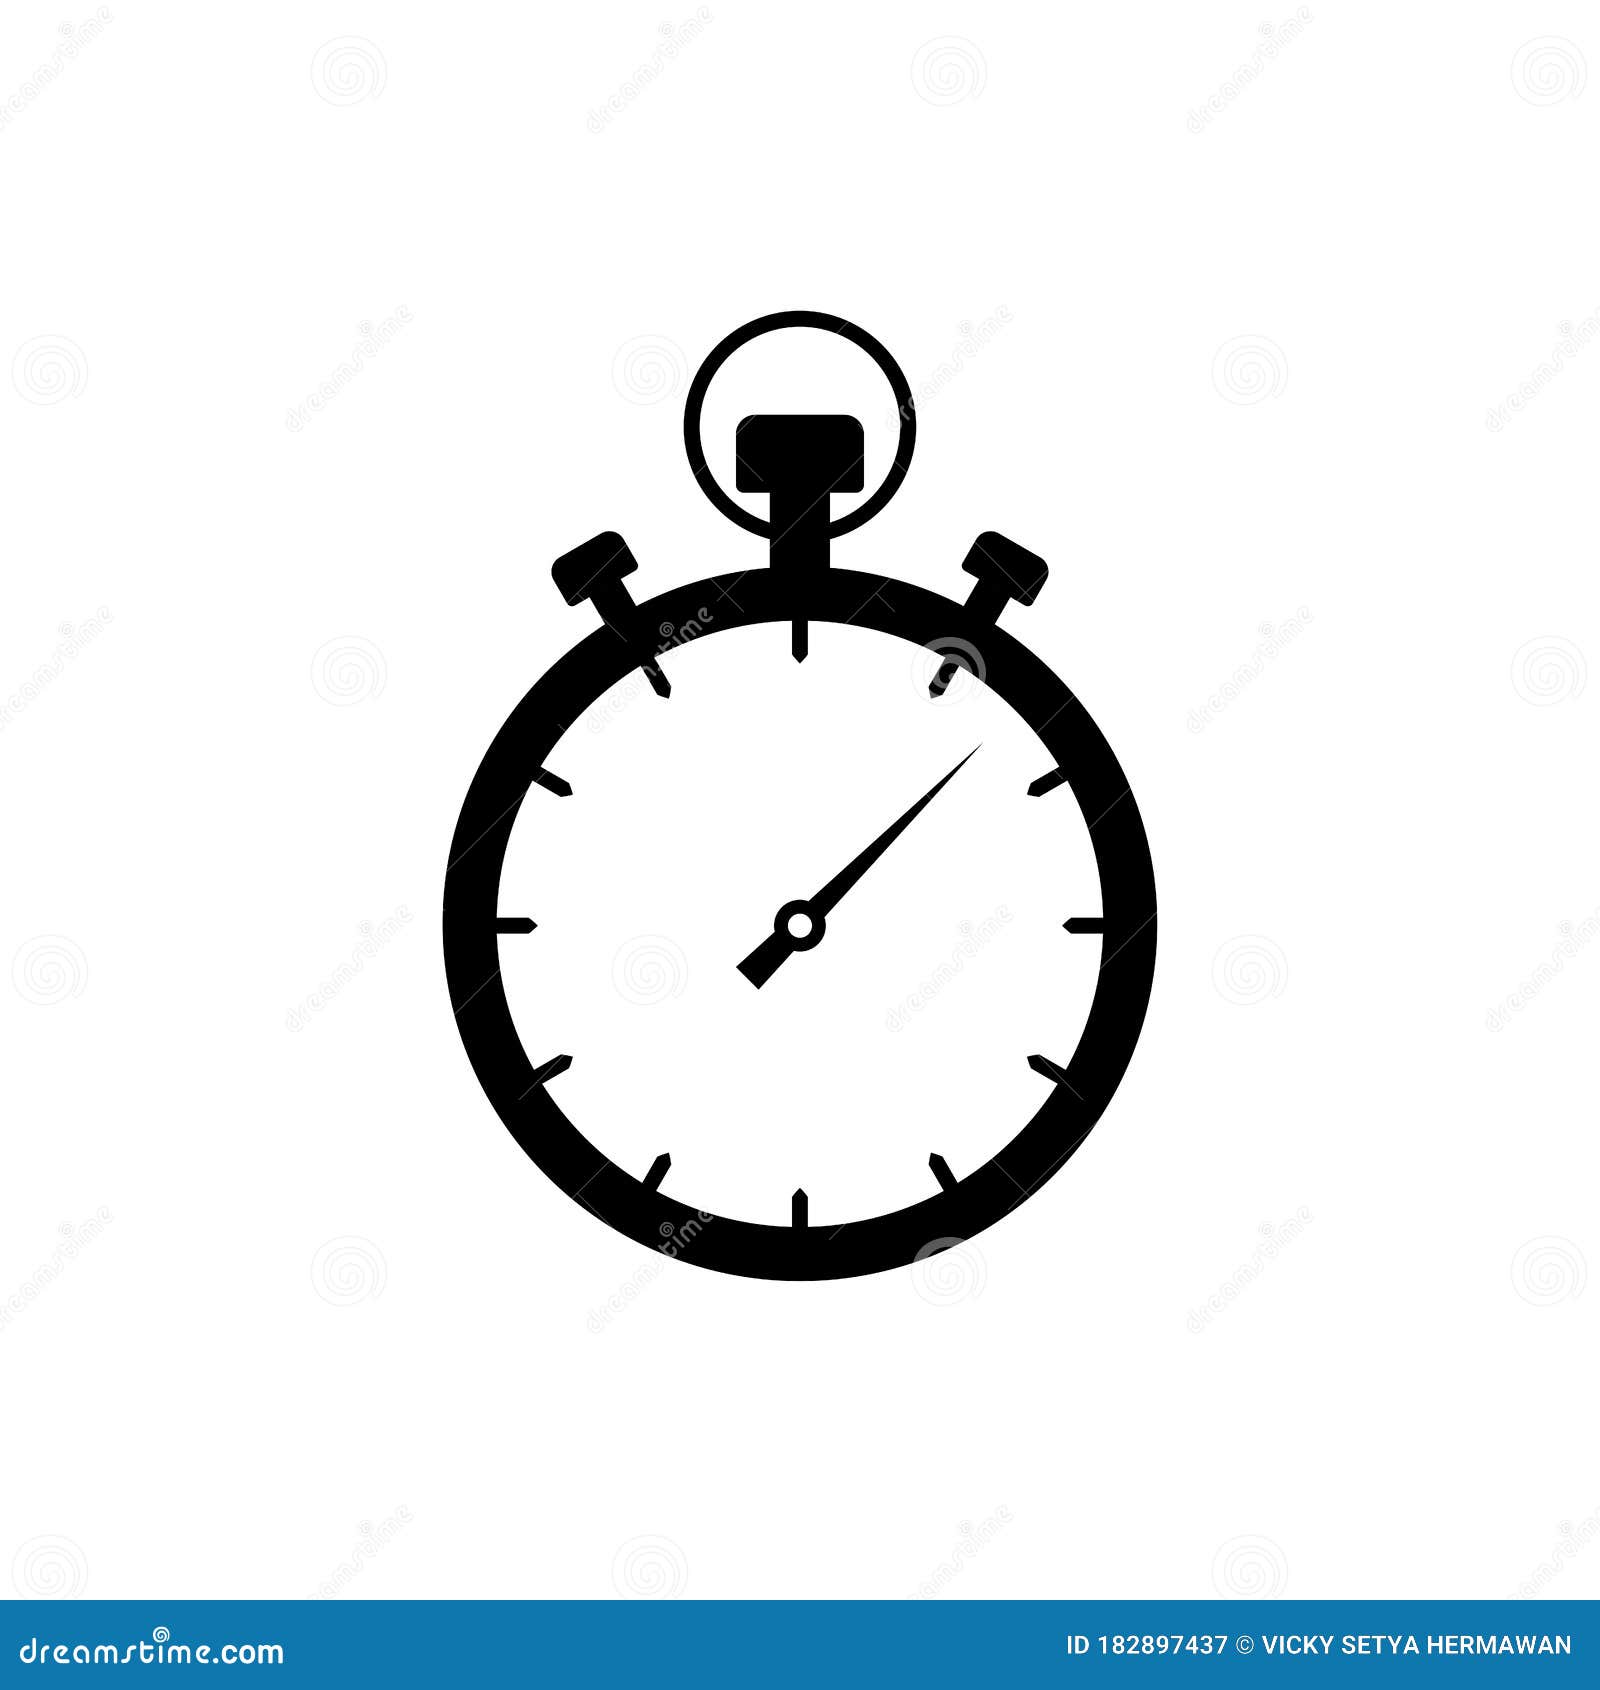 Biểu tượng đồng hồ bấm giờ đen trên nền trắng hình vector - Đầy tinh tế và nổi bật, biểu tượng đồng hồ bấm giờ đen trên nền trắng hình vector sẽ là sự lựa chọn hoàn hảo để thể hiện sự trang trọng và chuyên nghiệp của bạn. Xem ngay hình ảnh để nhận được những trải nghiệm tuyệt vời nhất!